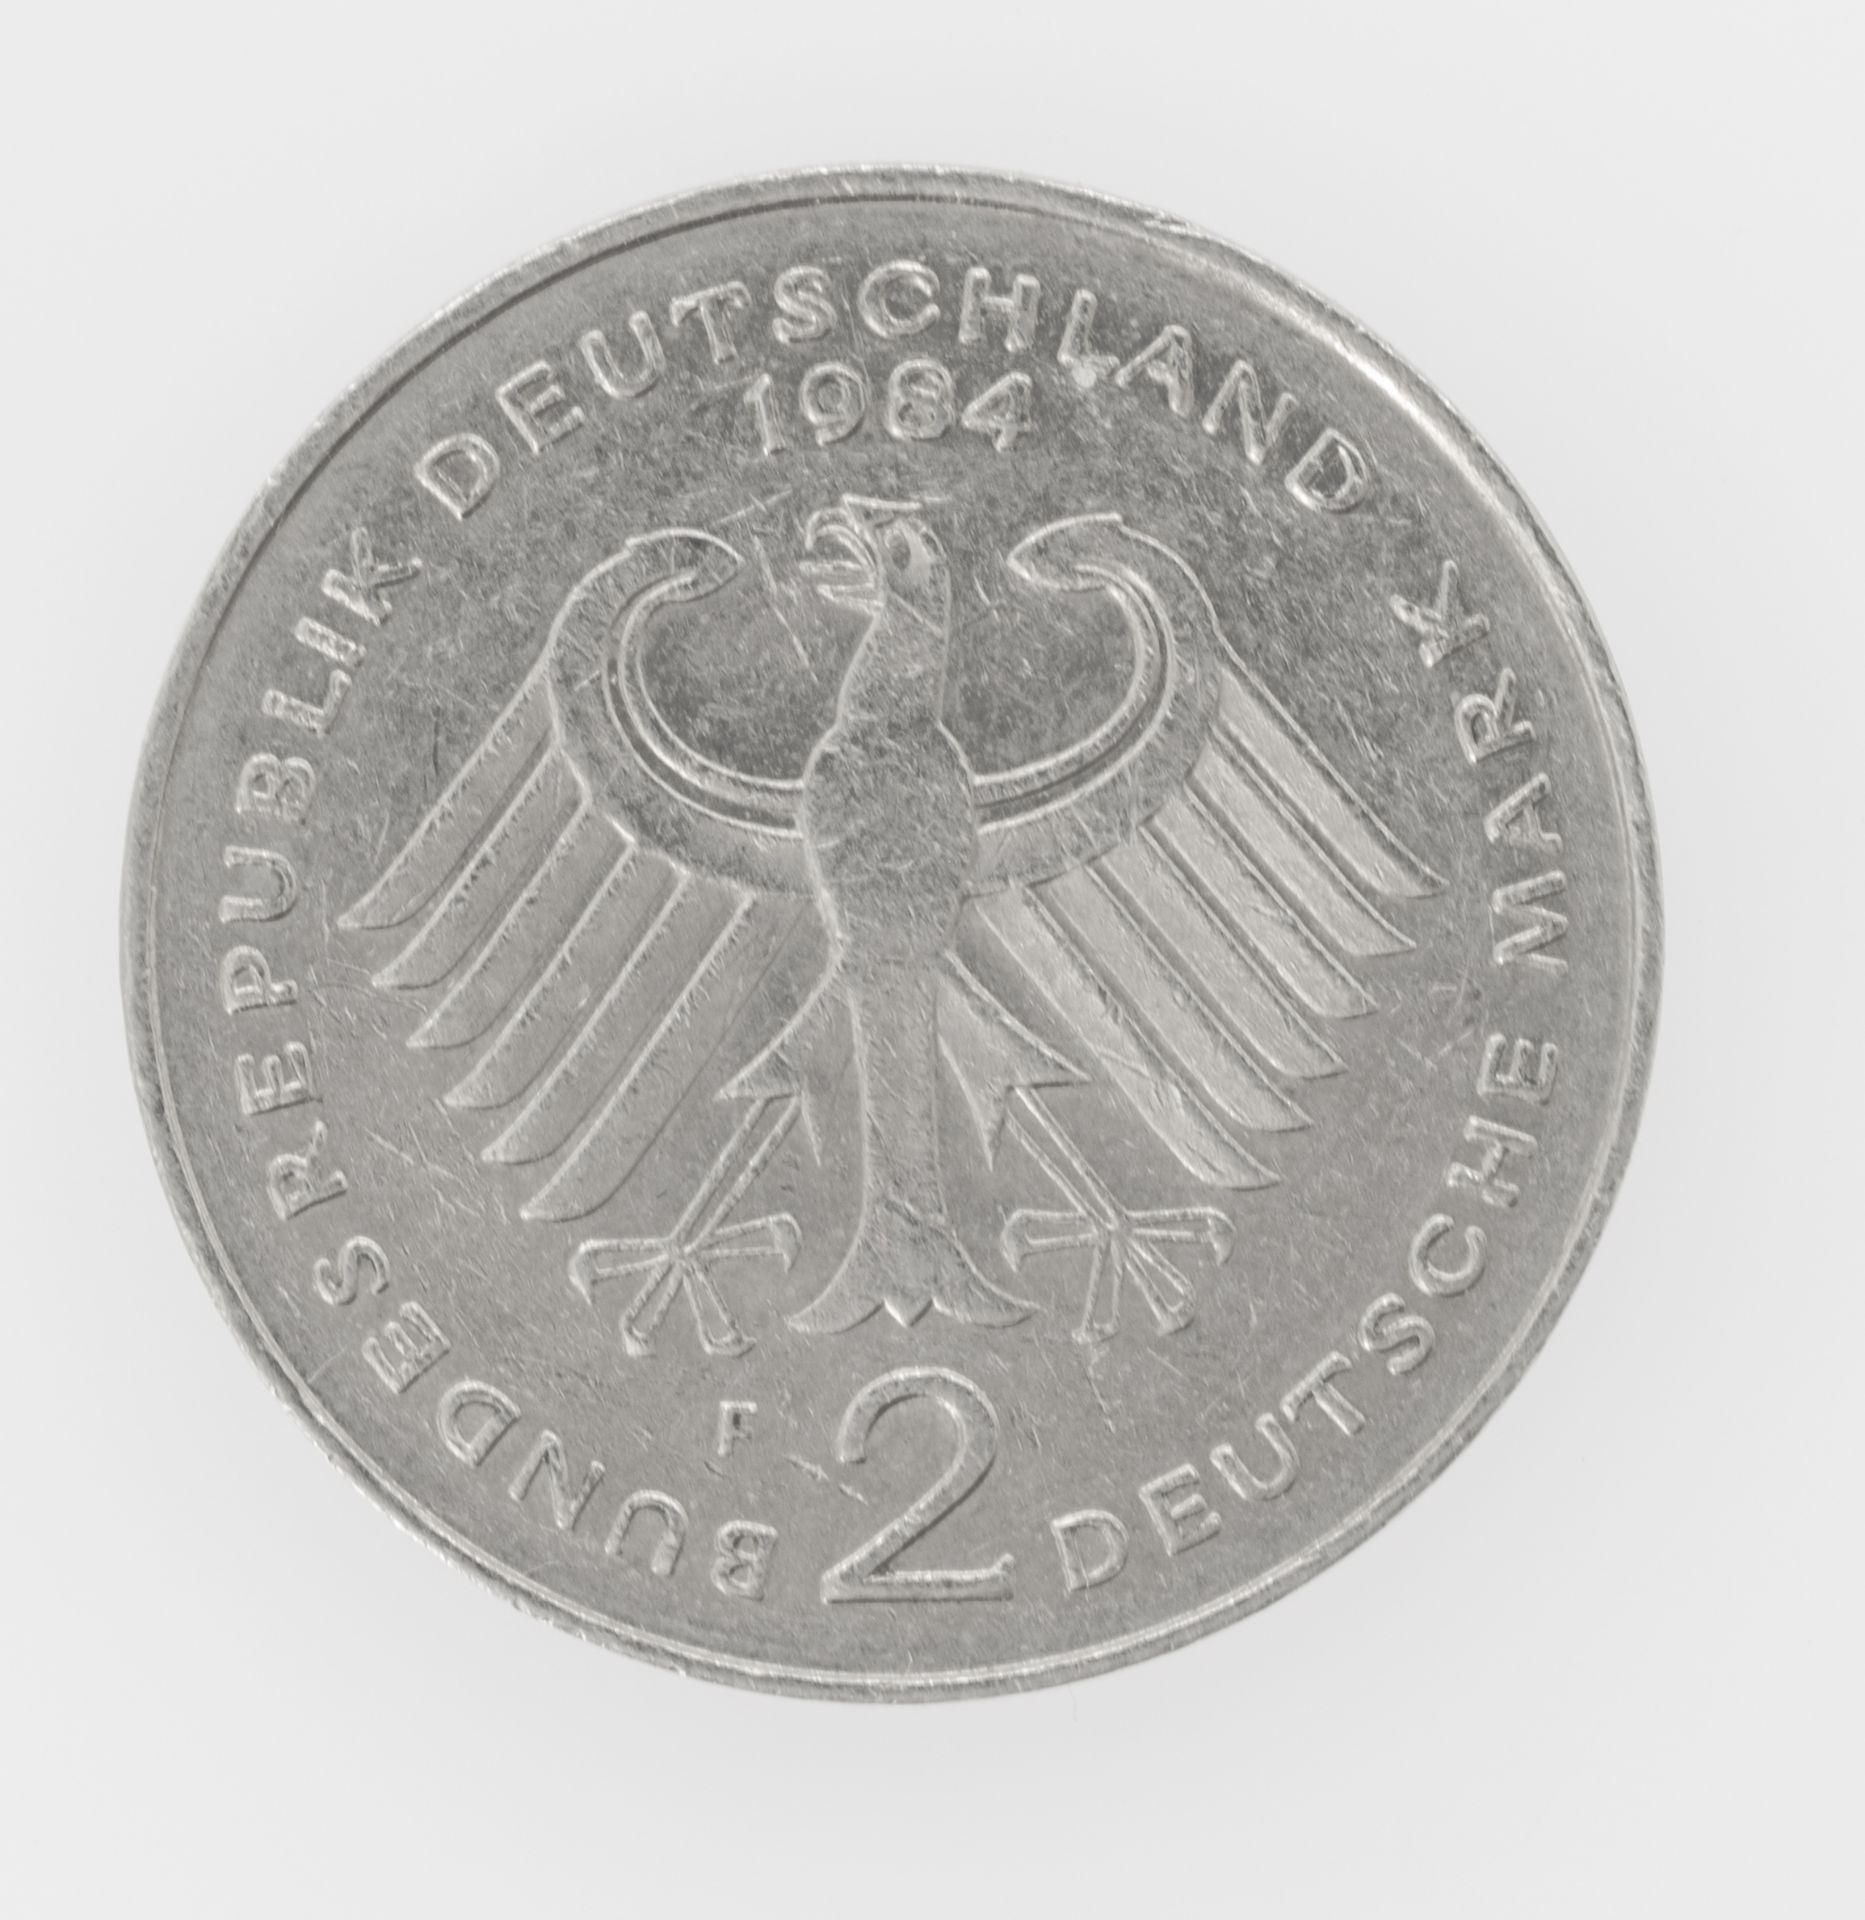 Deutschland 1984 F, 2.- DM - Münze "Konrad Adenauer". Magnetisch. - Image 2 of 3